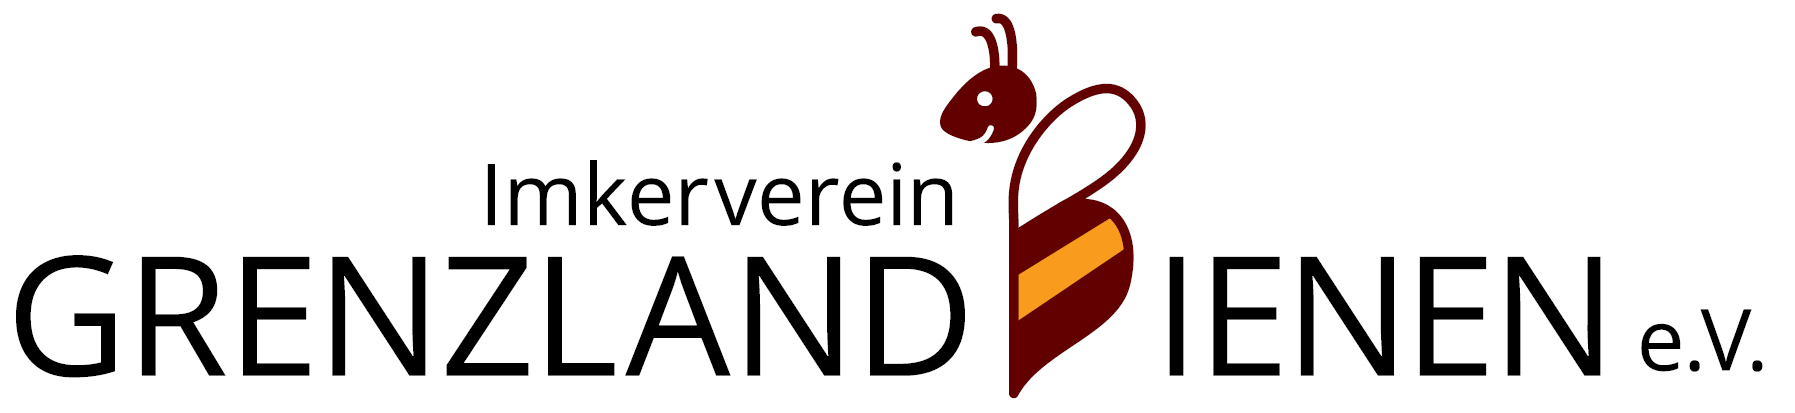 Imkerverein GrenzlandBienen e.V.